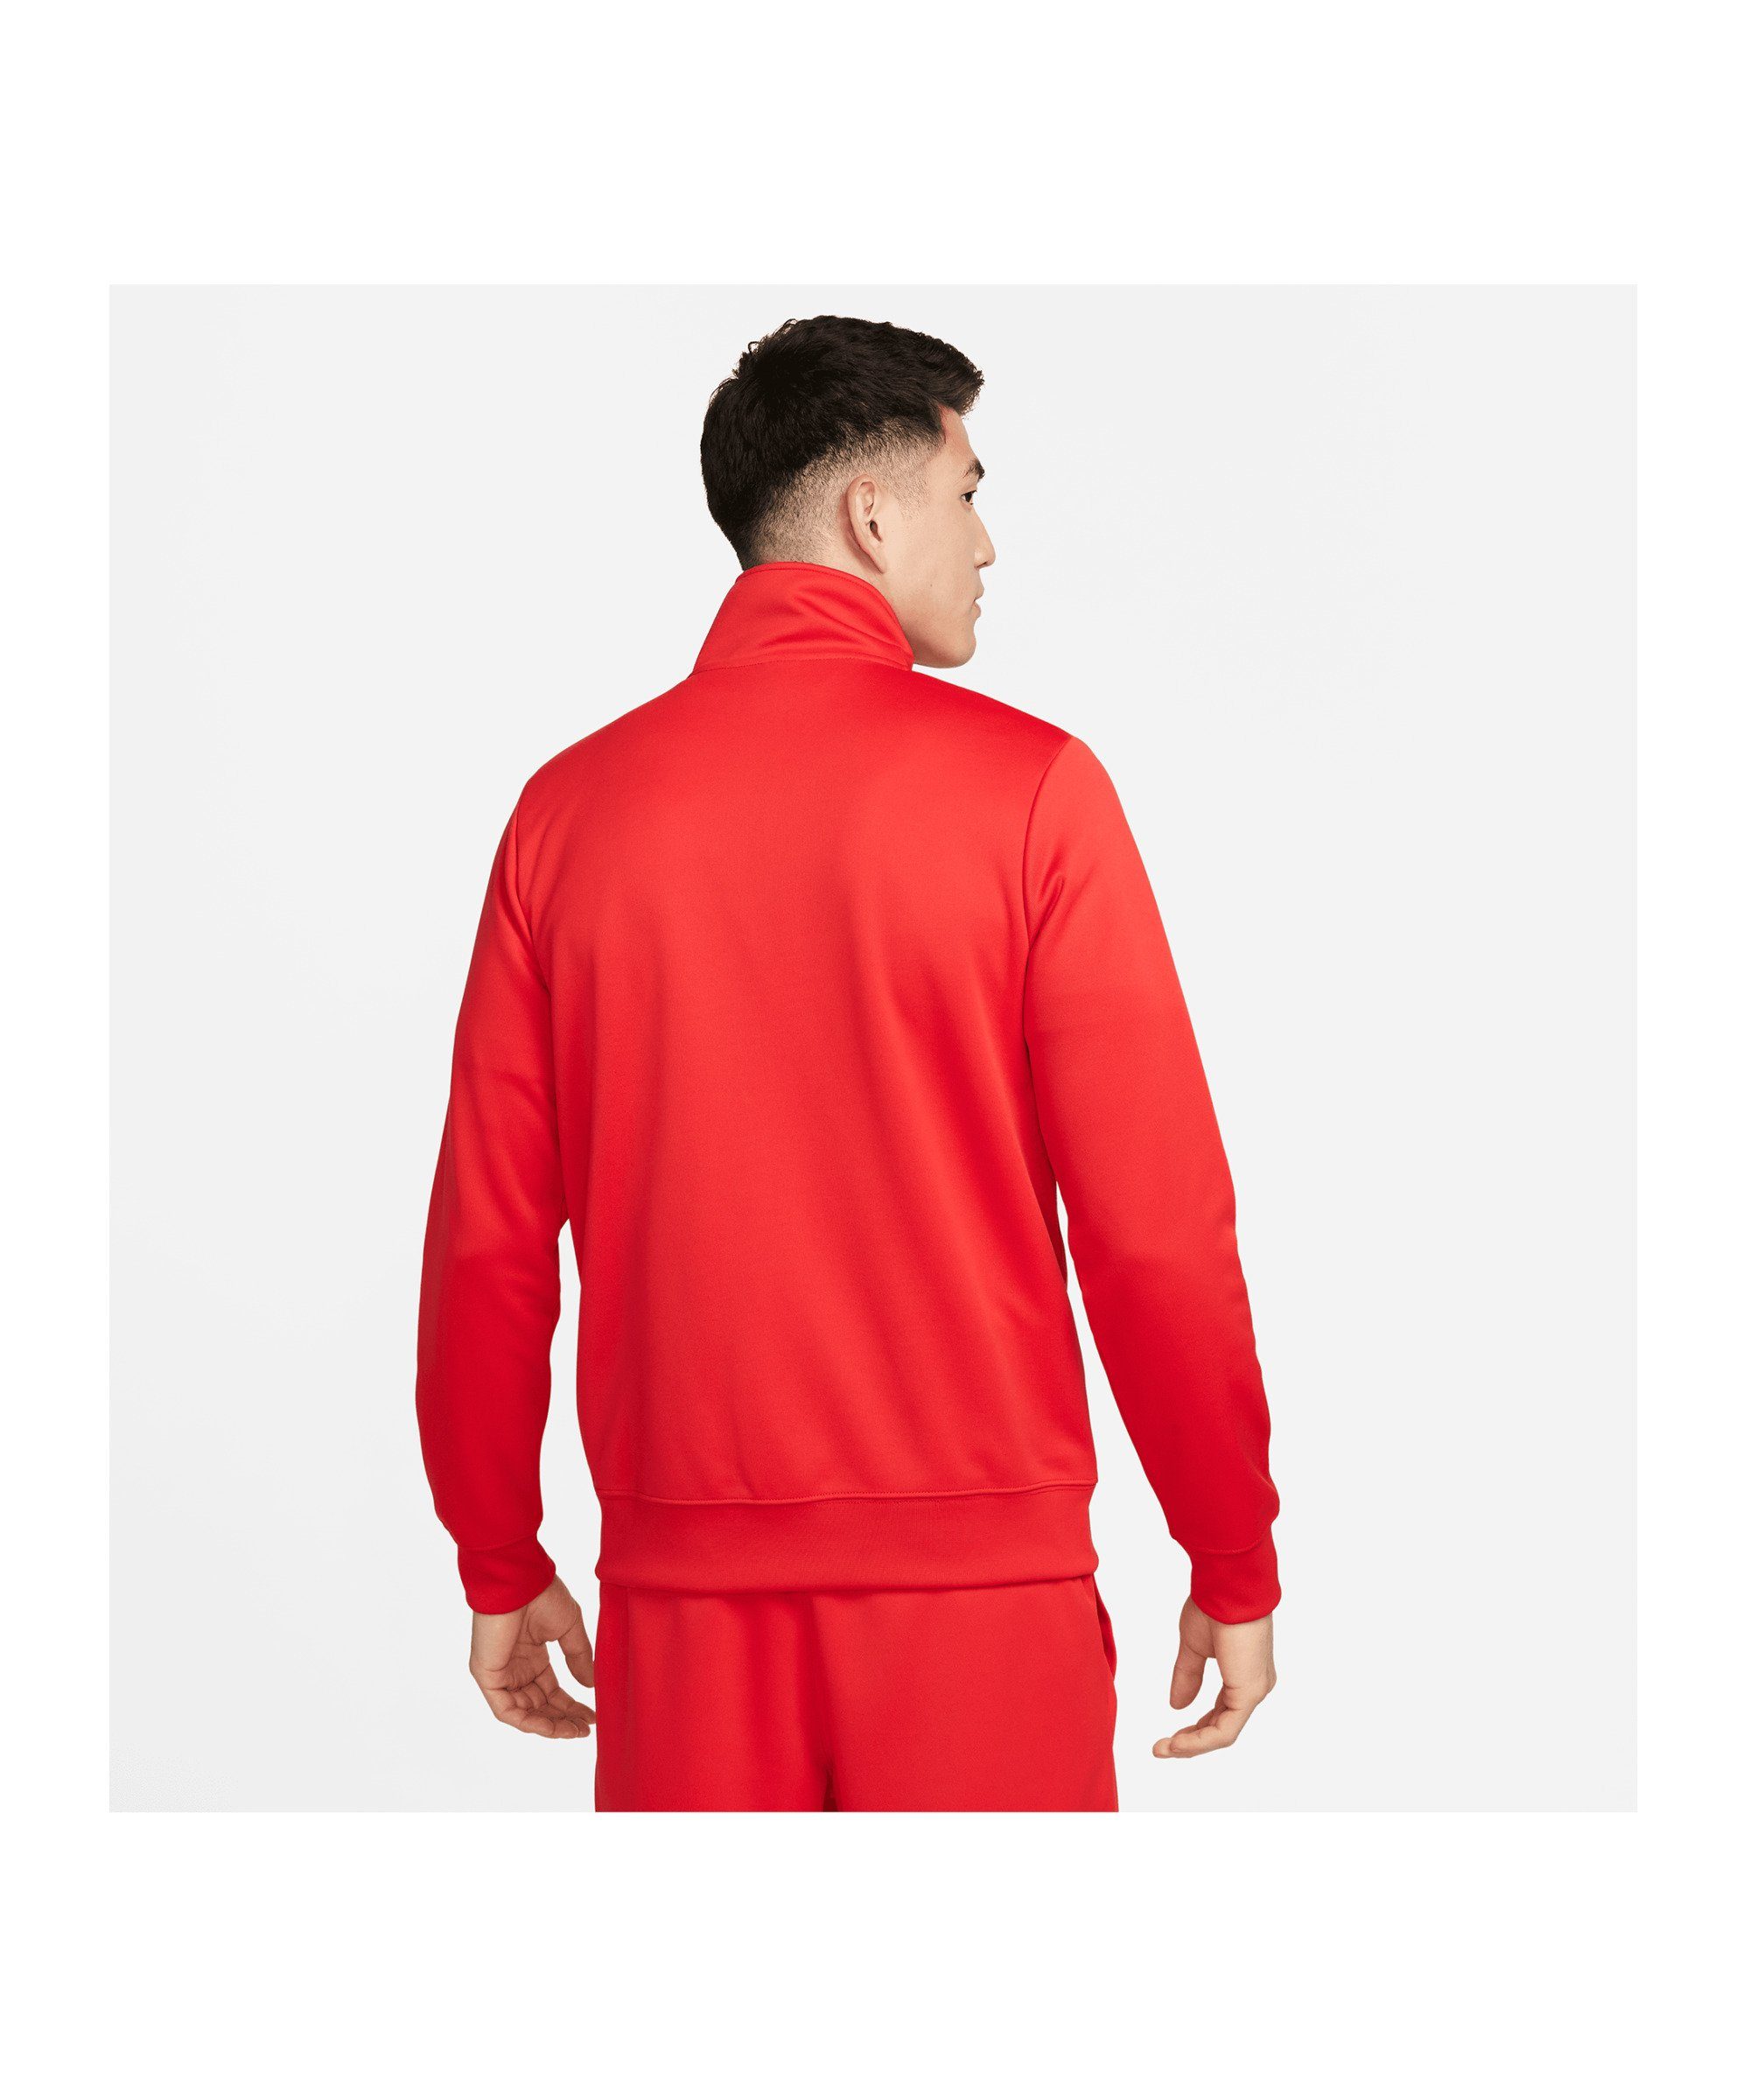 Nike Sportswear Sweatjacke Jacke Issue rot Standart